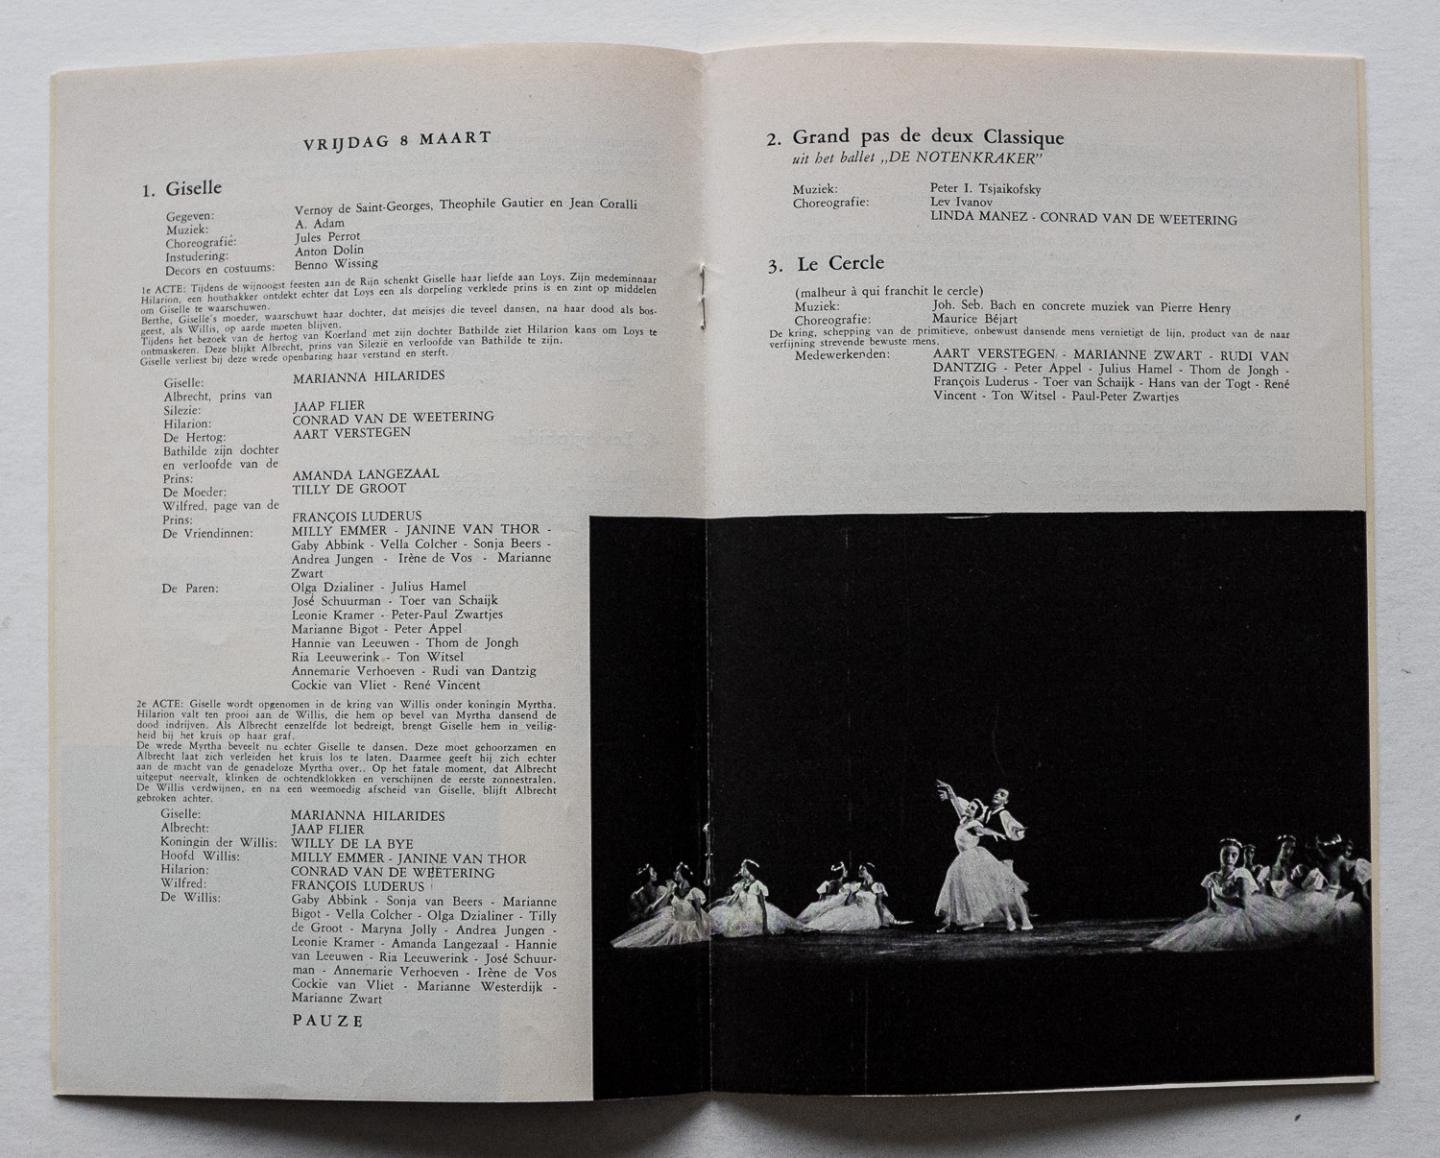 Het Nederlands Ballet - Het Nederlands ballet 7-8-9 en 10 maart 1957 onder artistieke leiding van Sonia Gaskell